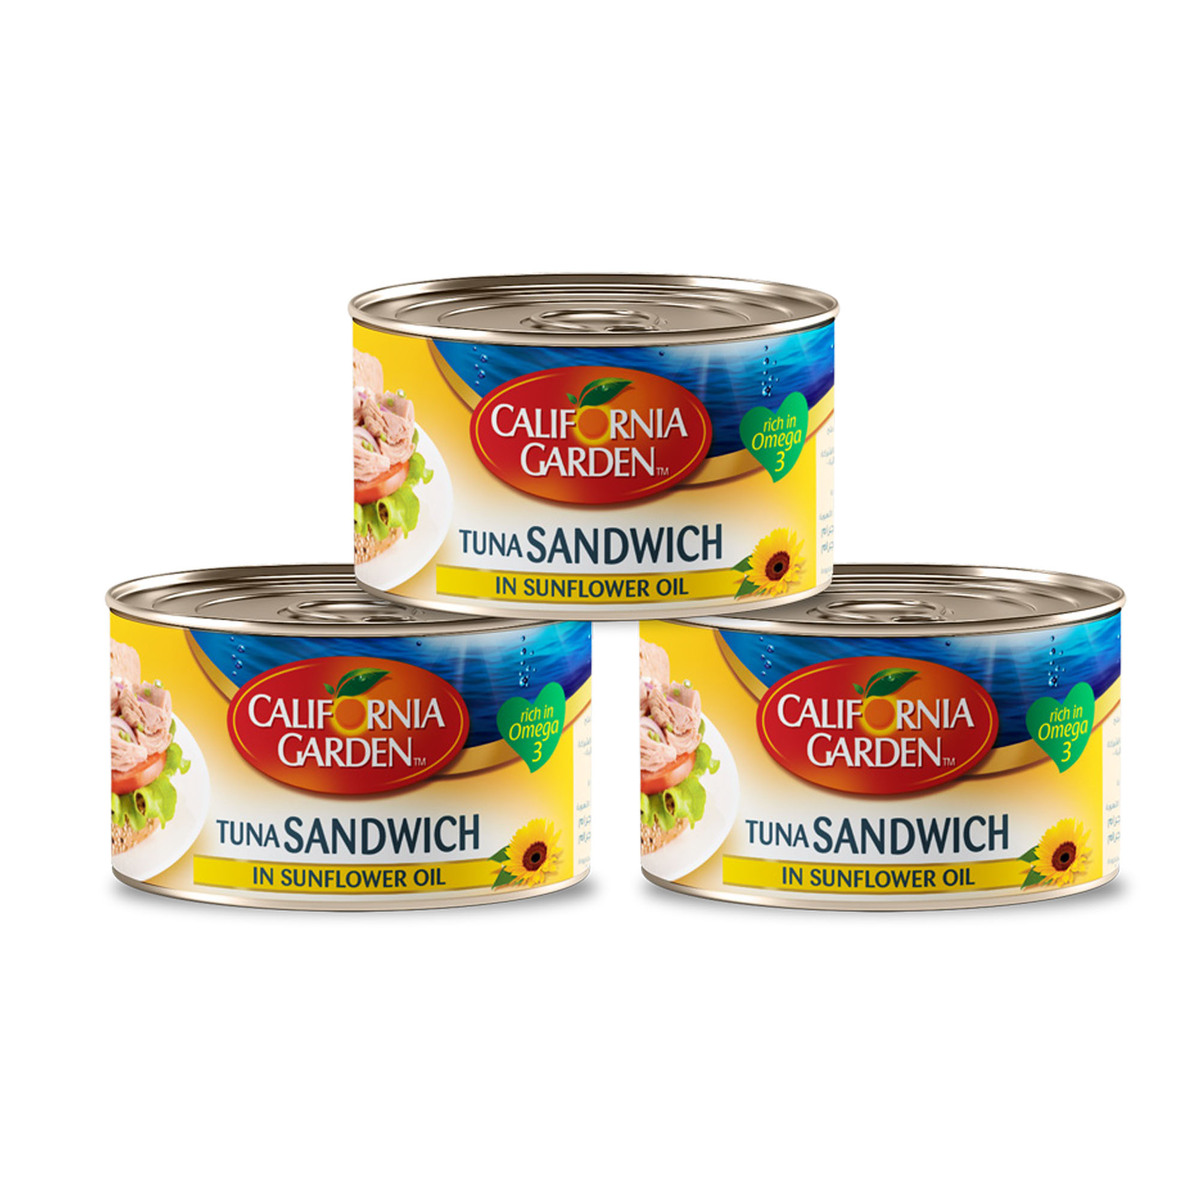 California Garden Tuna in Sunflower Oil 3 x 160g Online at Best Price ...